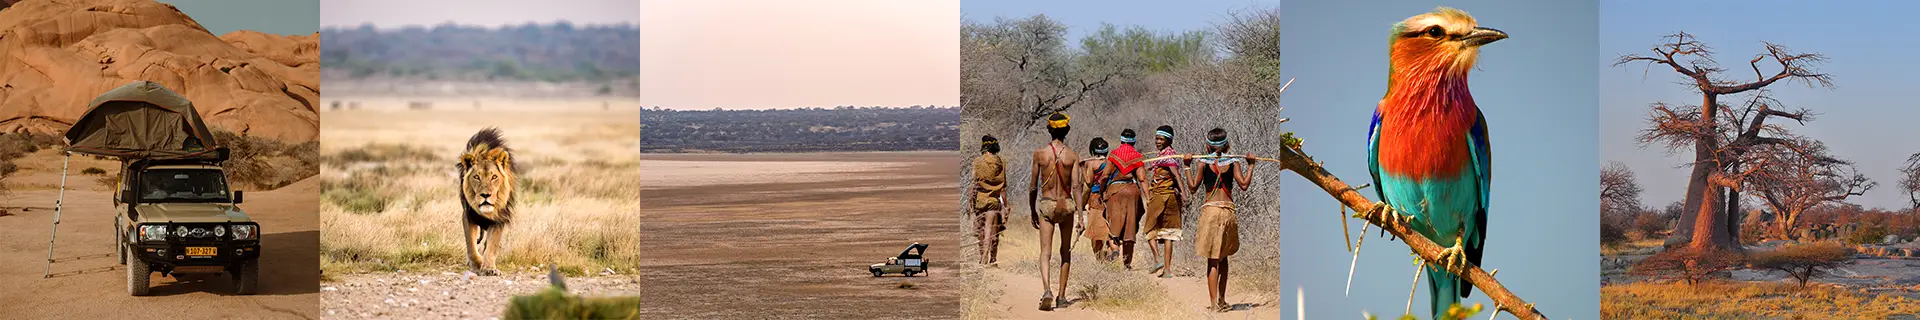 Budget-Autohuur-Namibië-Self-Drive-Safari-Group-VGG